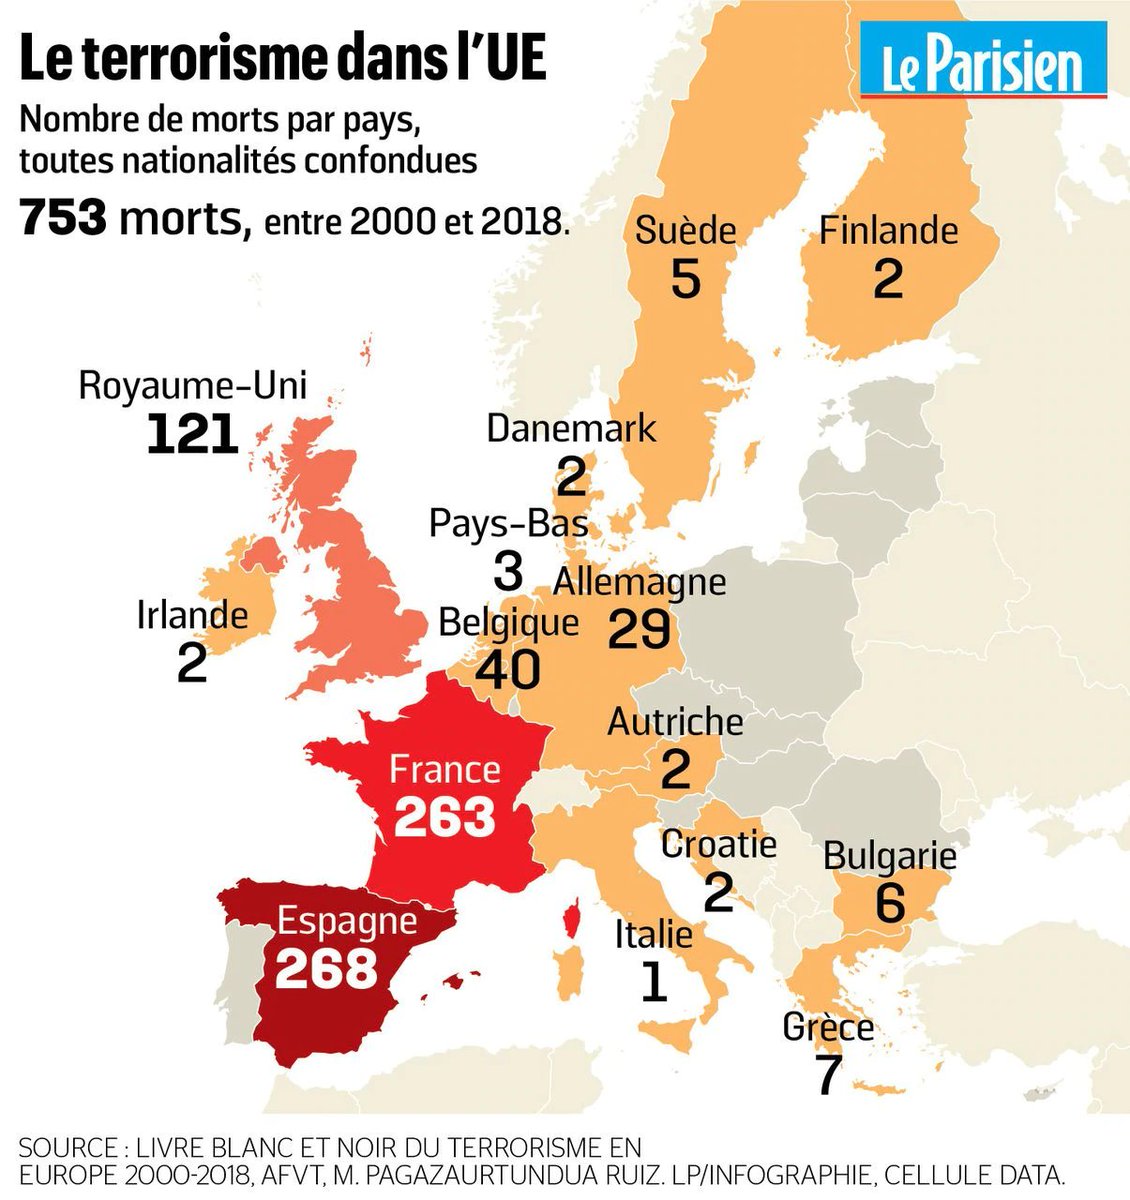 En 2018, le nombre de morts (24) a fléchi. Le terrorisme islamiste reste cependant omniprésent, comme l'a rappelé l'attentat de Strasbourg le 11 décembre 2018. D'ailleurs, entre 2000 et 2018,